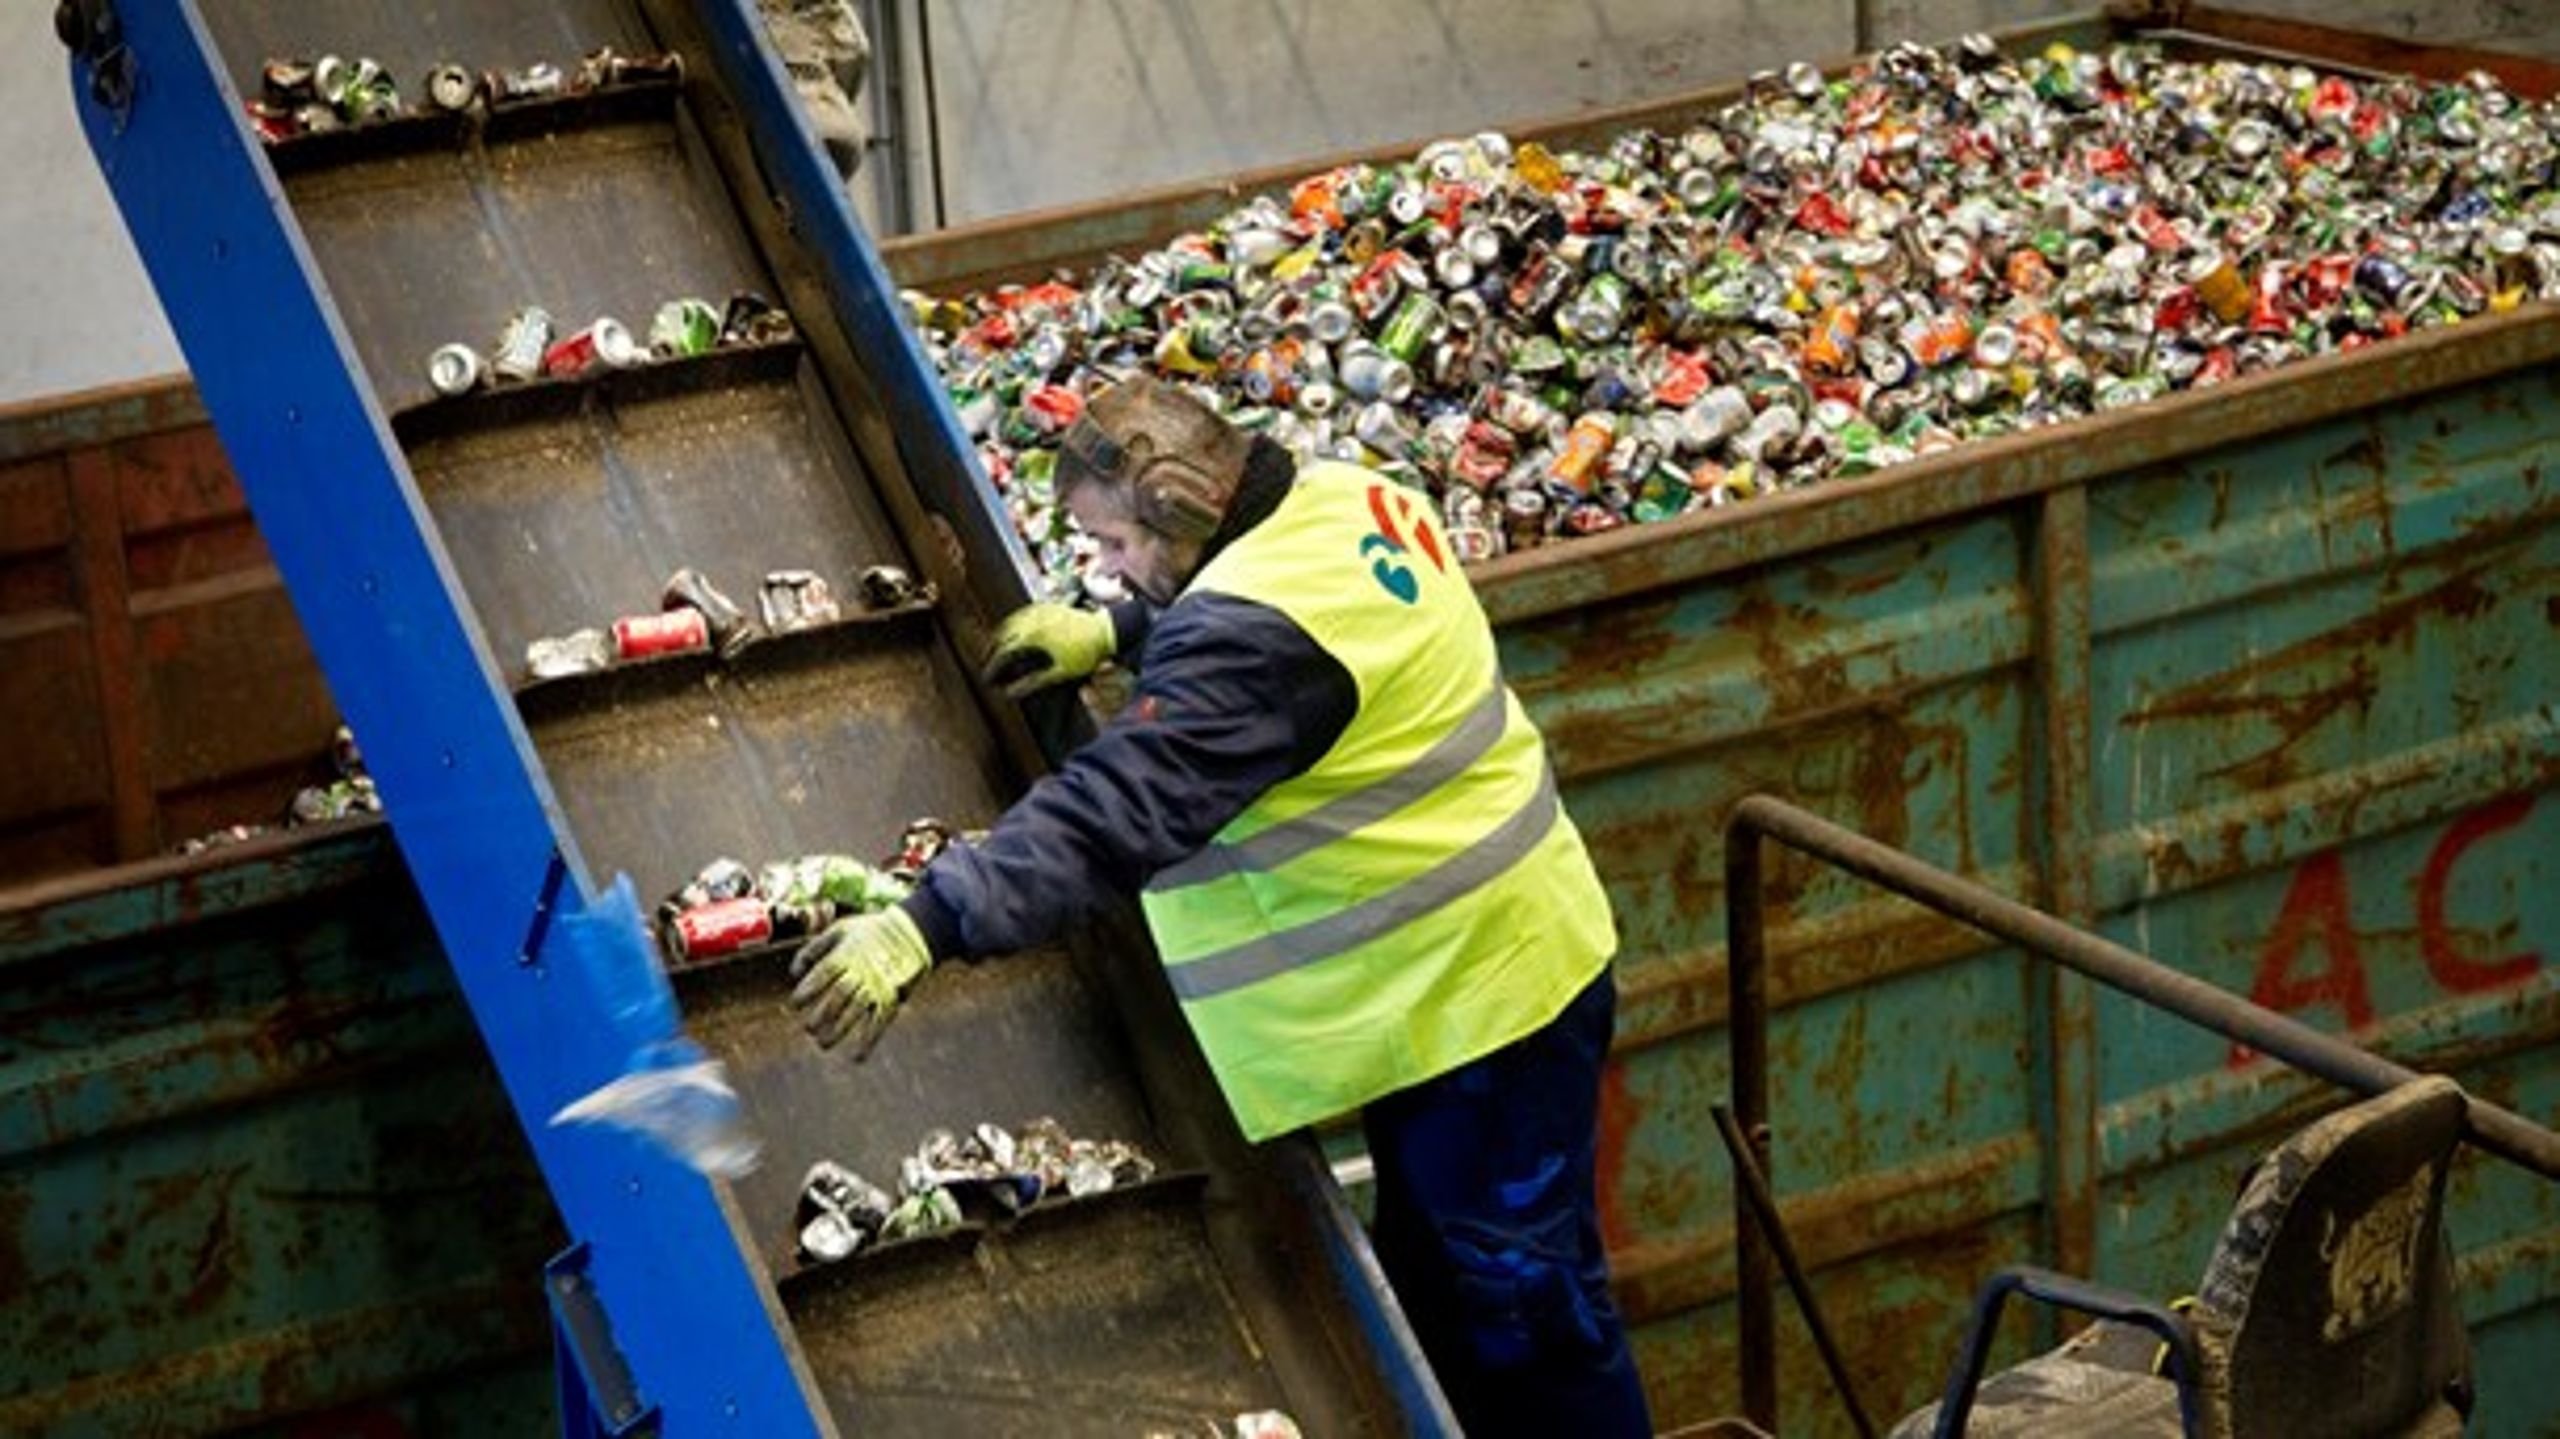 Der er uendeligt mange store som små virksomheder, der indsamler og behandler affald med henblik på genanvendelse af materialer til nye produkter, mener DTL og Dansk Erhverv.